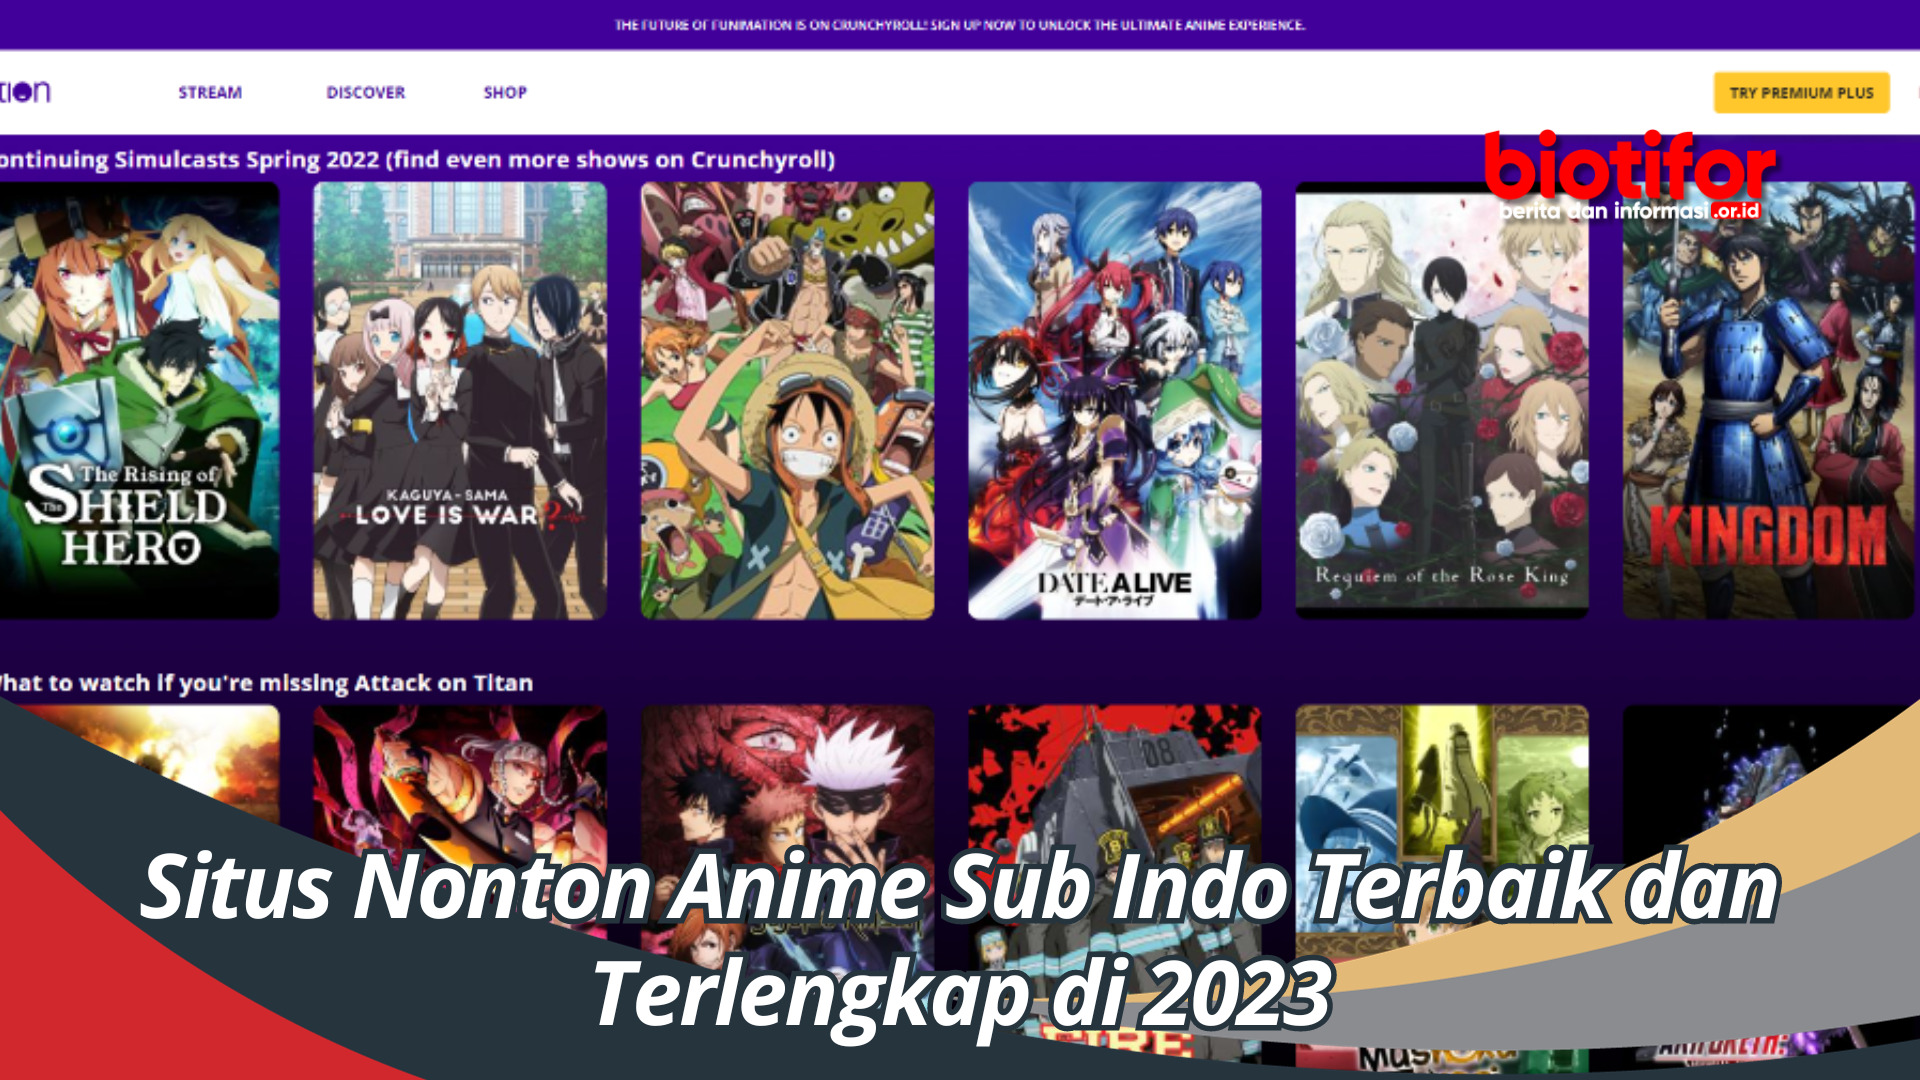 Situs Nonton Anime Sub Indo Terbaik dan Terlengkap di 2023